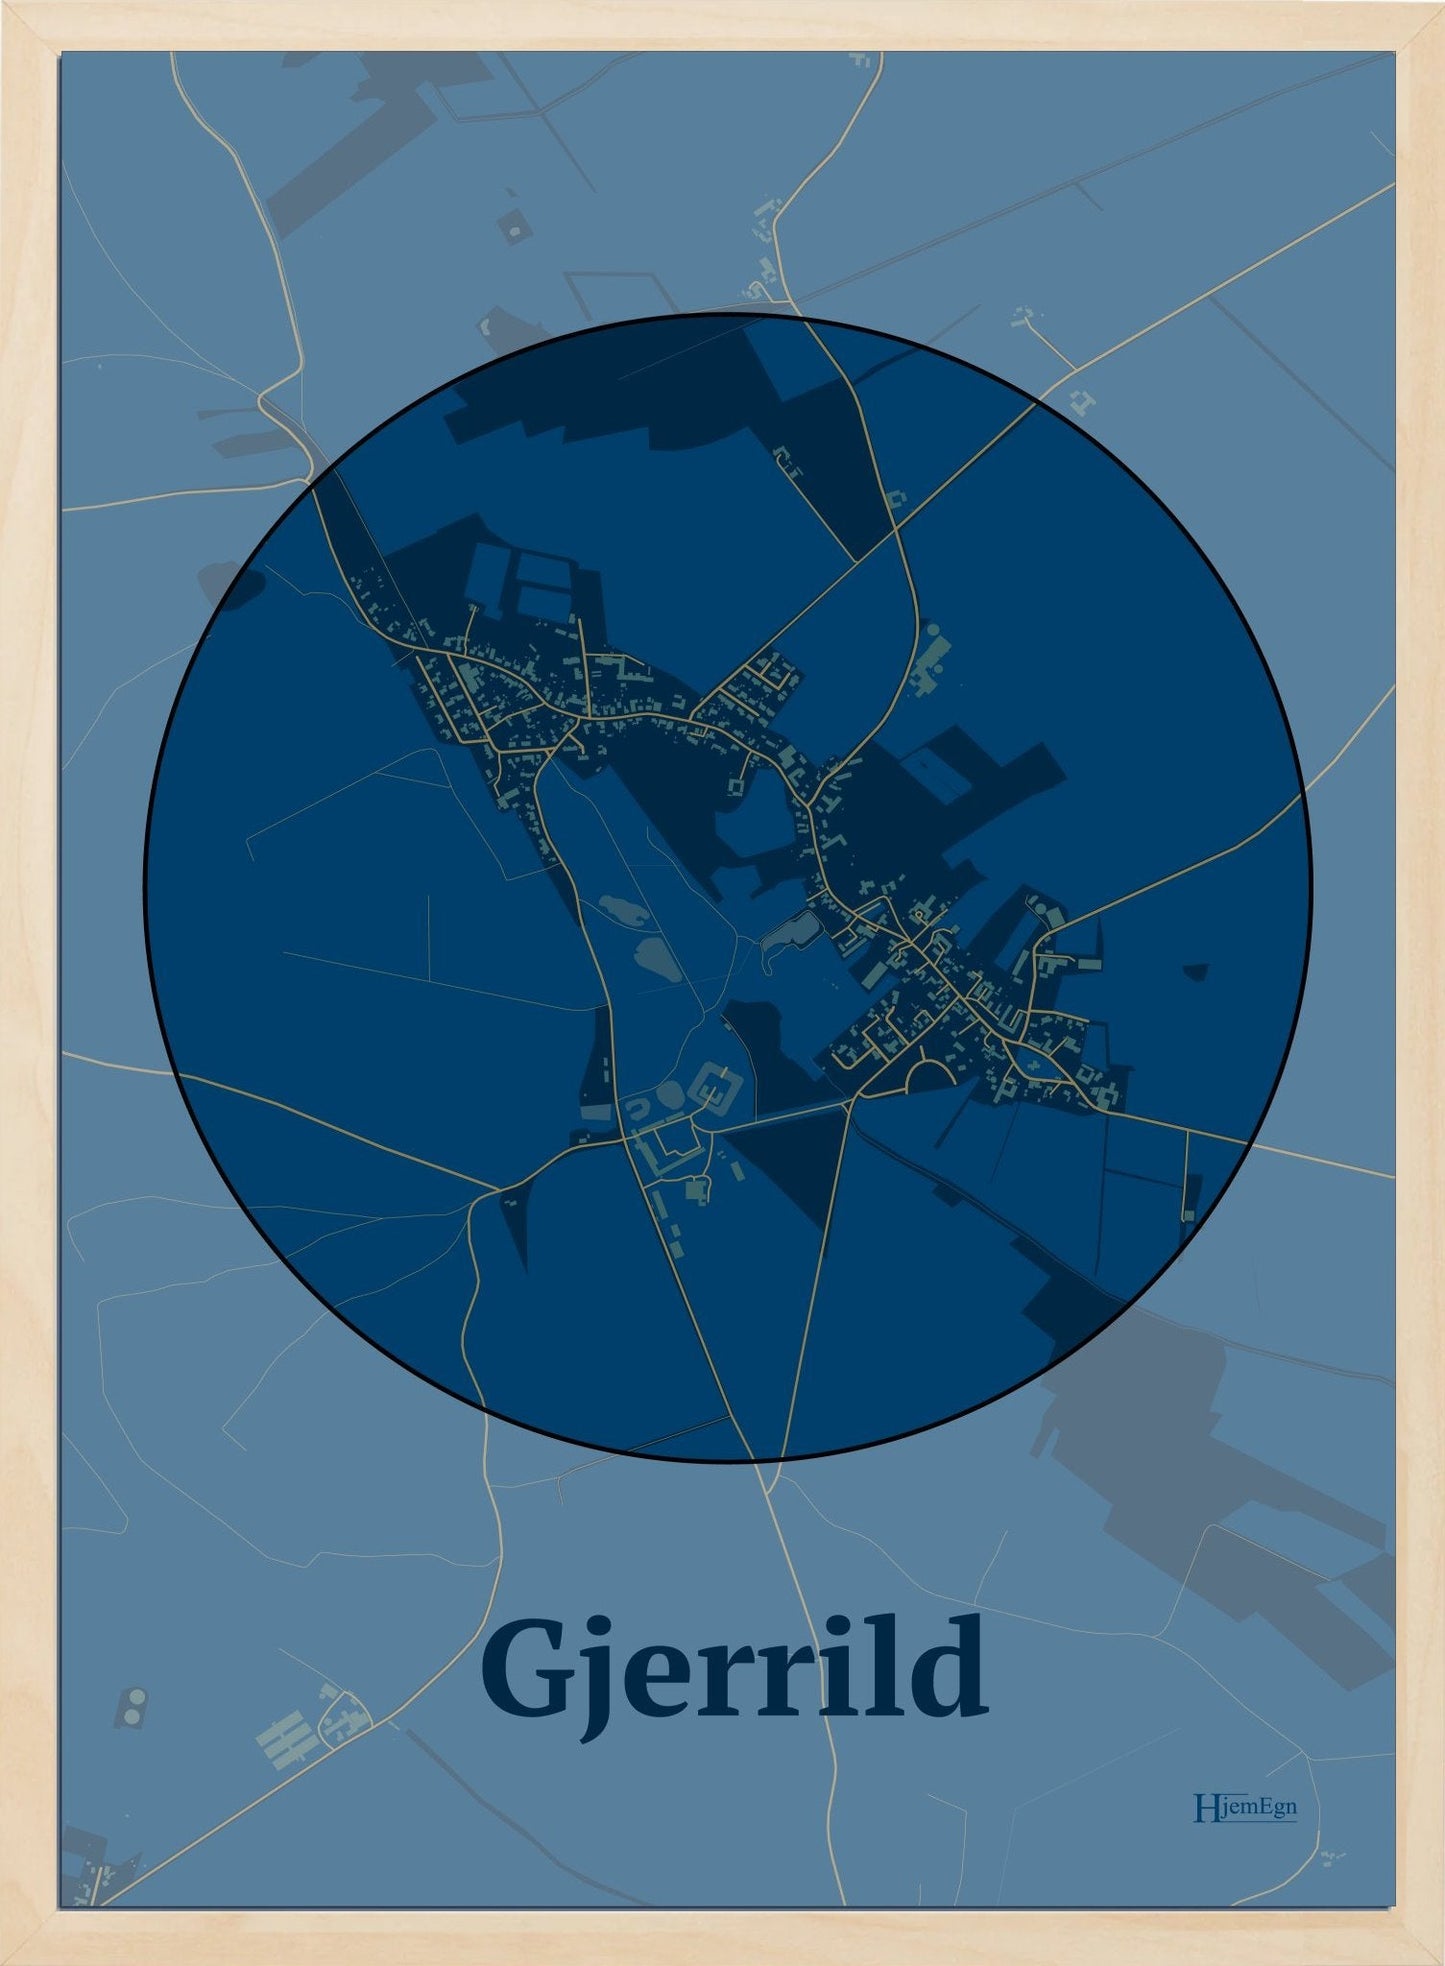 Gjerrild plakat i farve mørk blå og HjemEgn.dk design centrum. Design bykort for Gjerrild